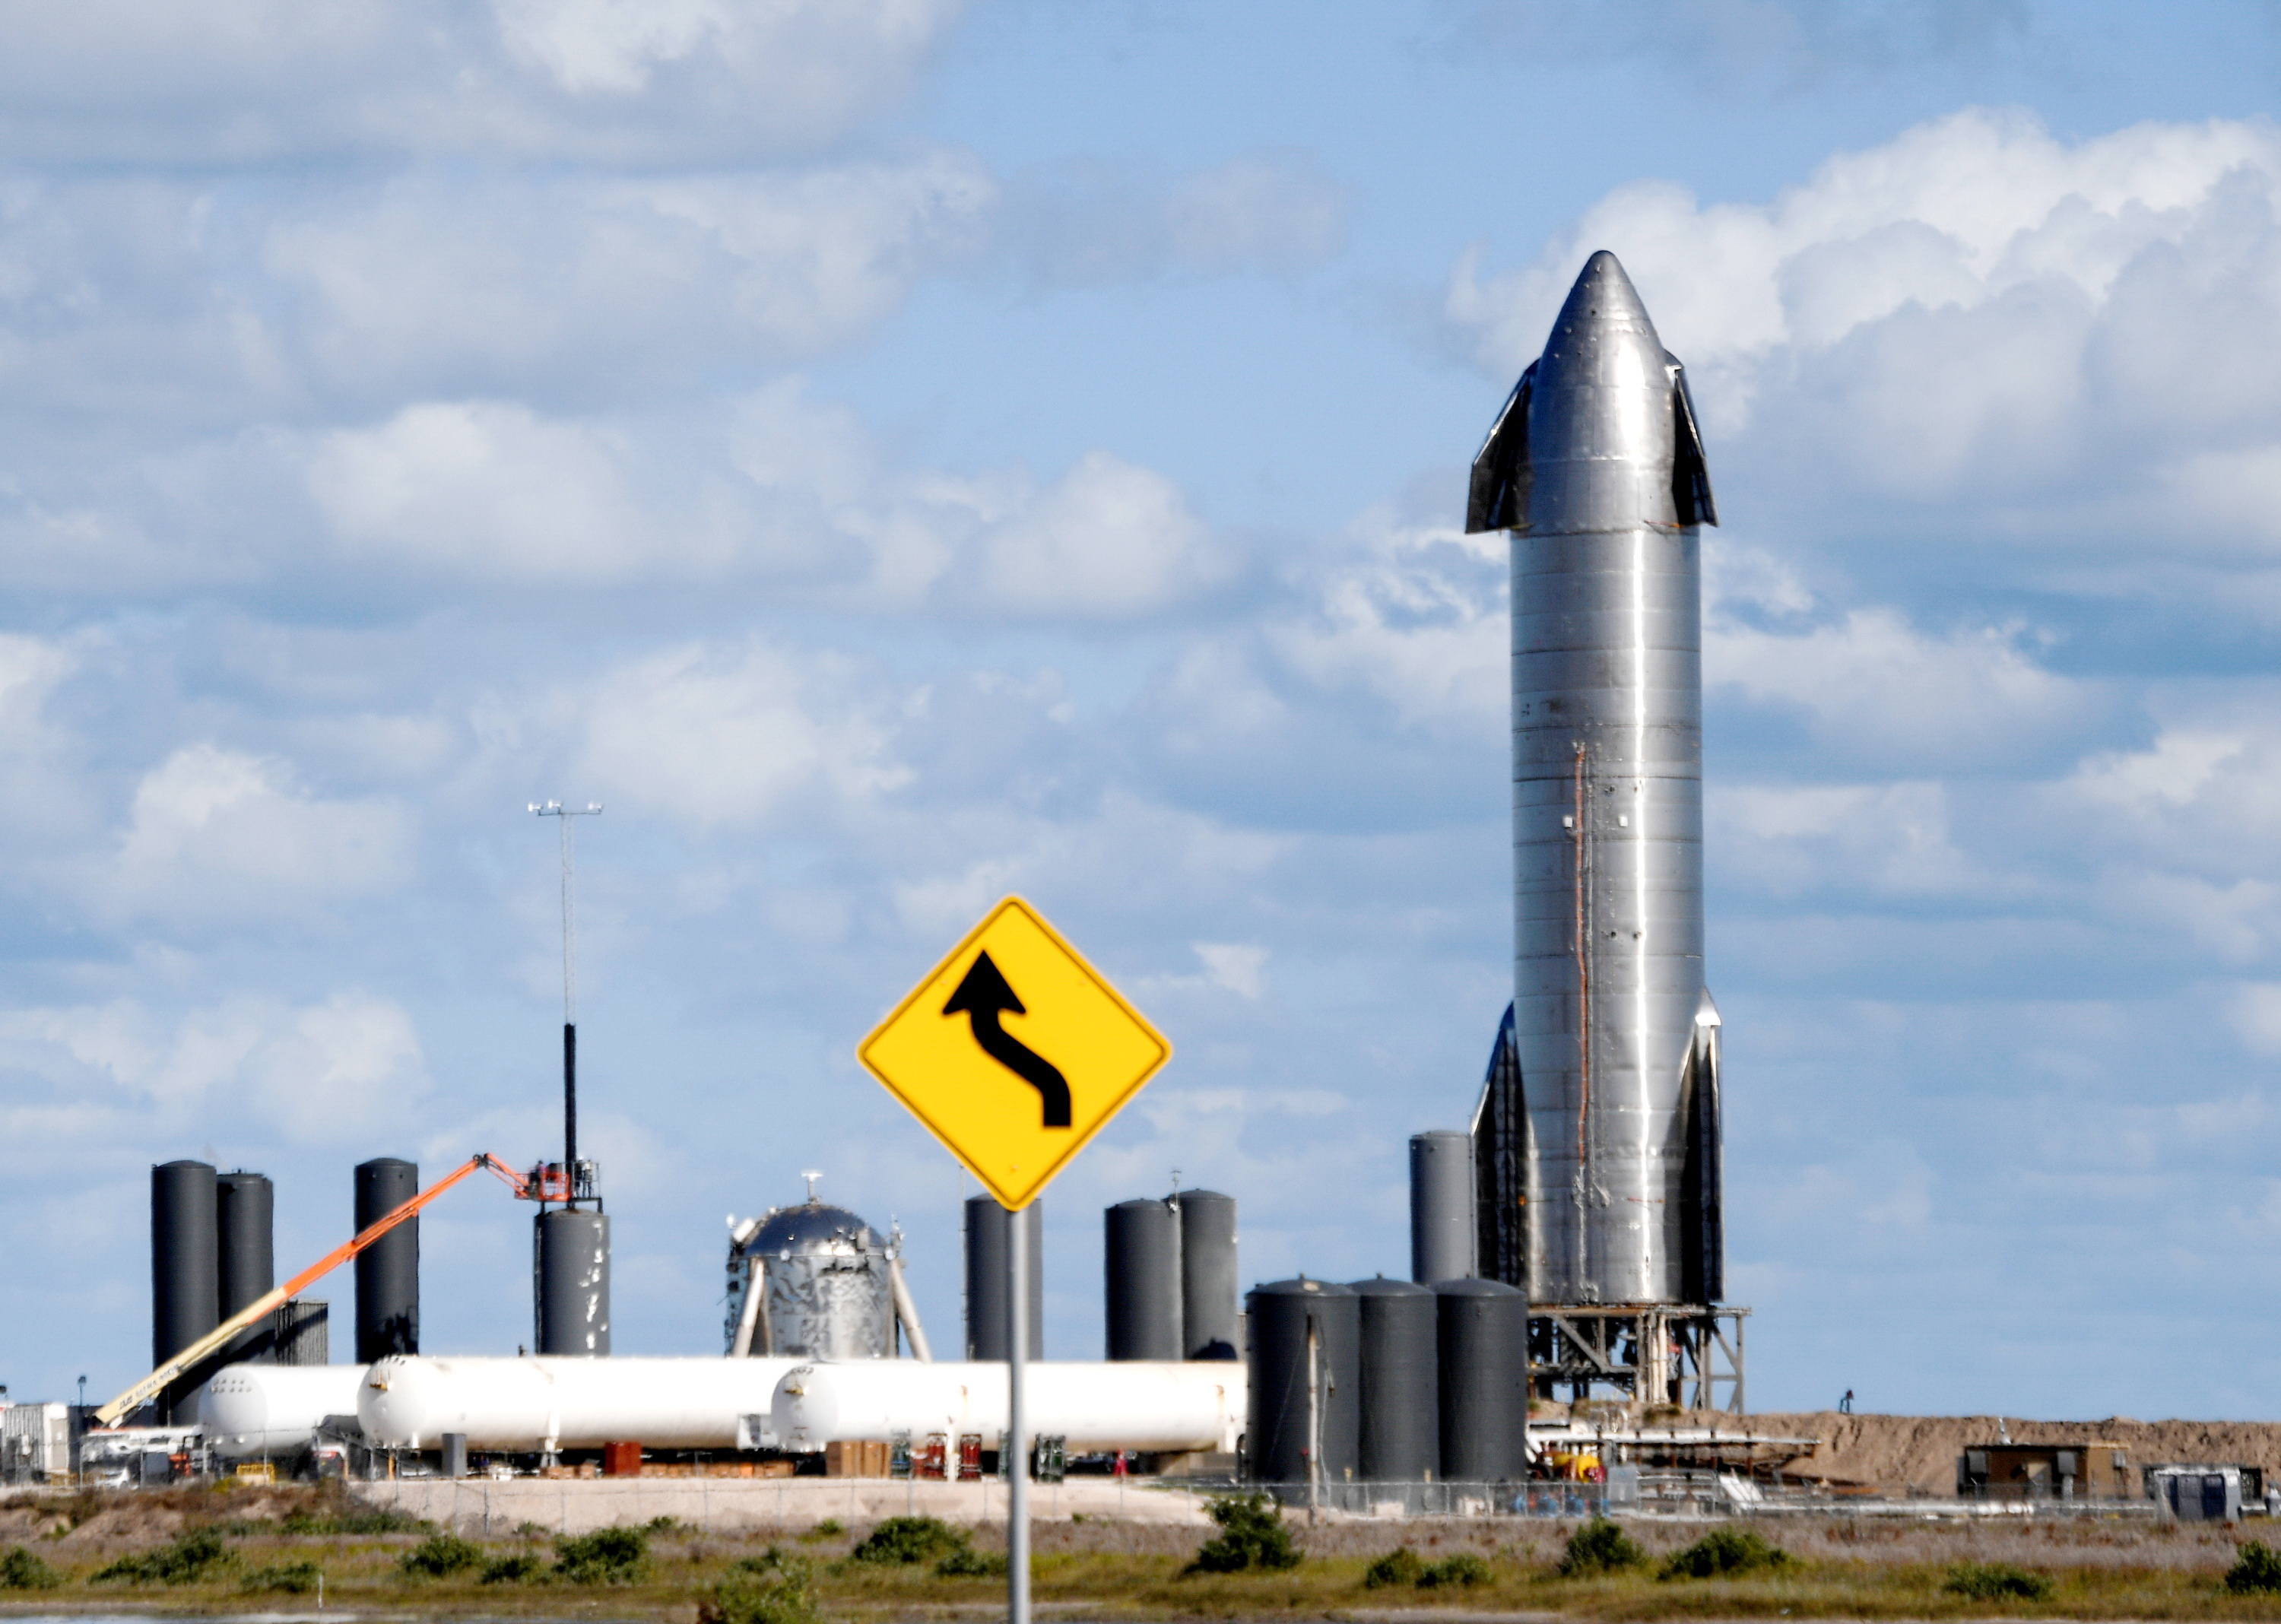 馬斯克旗下另一公司SpaceX的火箭發射場也位於得州郊區Boca Chica，去年已投入運作。馬斯克若想遷往得州，實屬「合理又合邏輯」。（路透資料圖片）